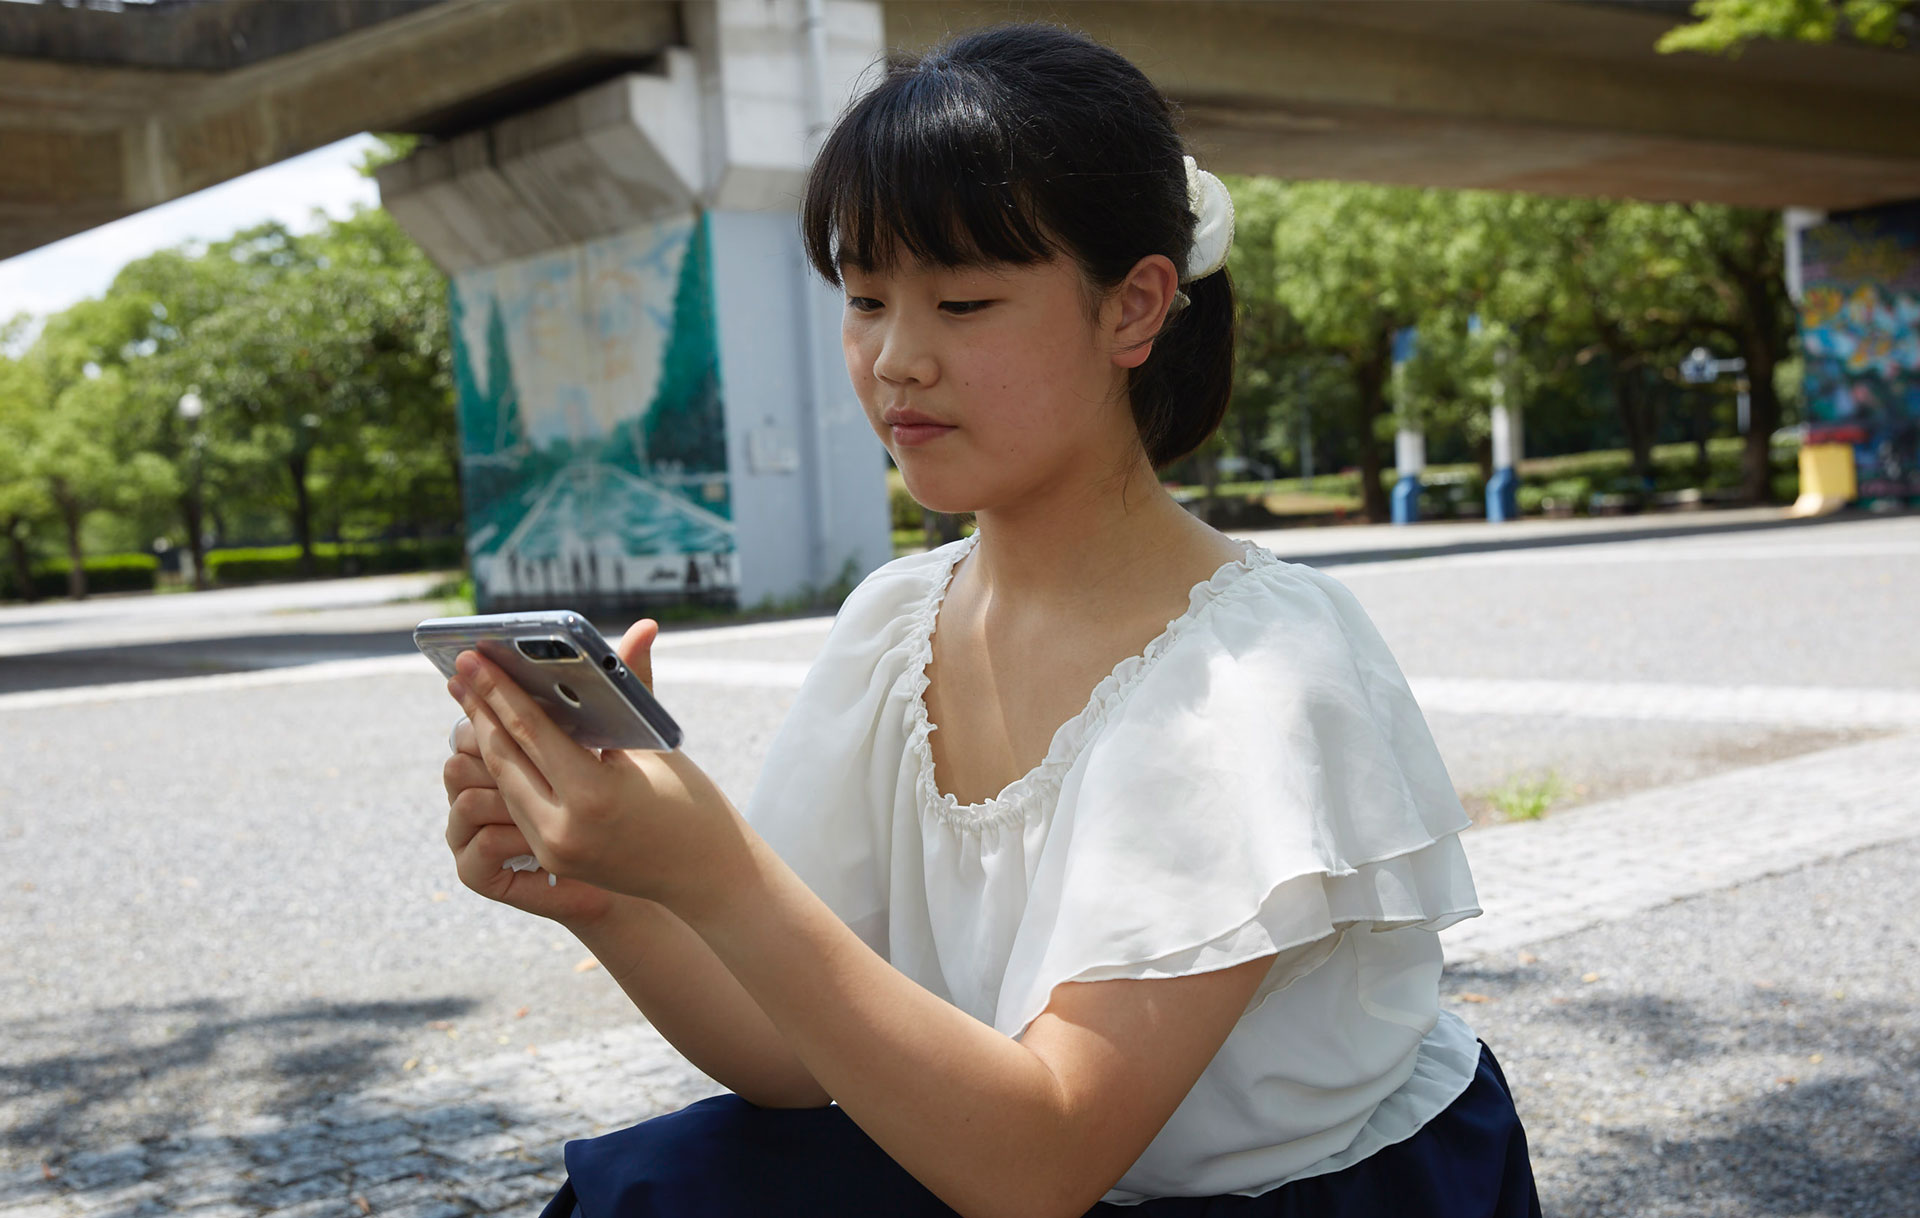 Lenovo New Realities Noi Tatsuzaki looking at smartphone